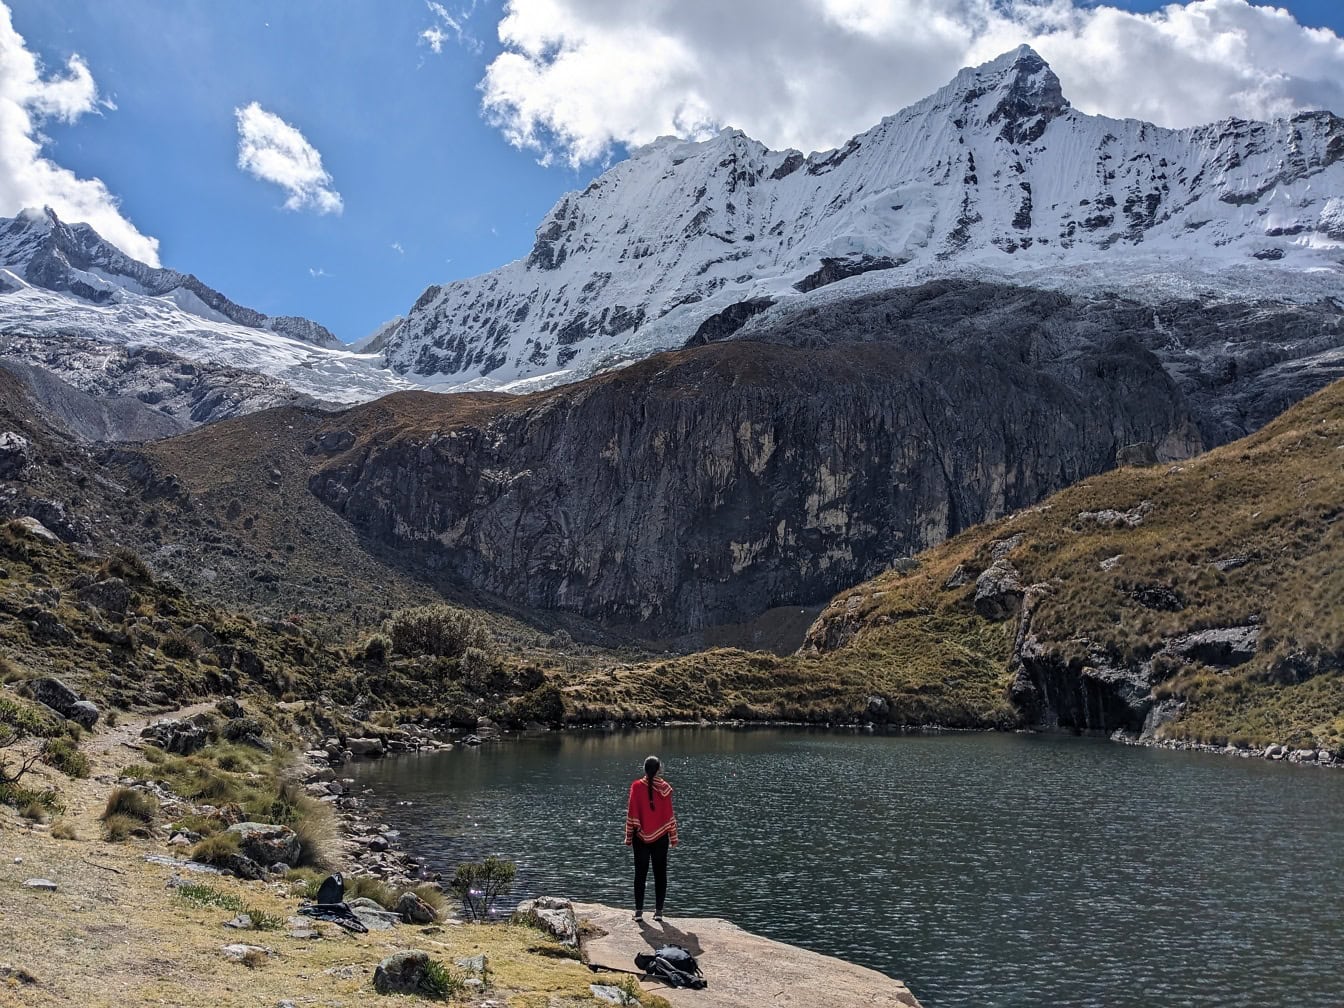 Persoon in traditionele Peruaanse poncho bevindt zich op een meeroever in de bergketen Cordillera Blanca in Andes van Peru, Latijns-Amerika